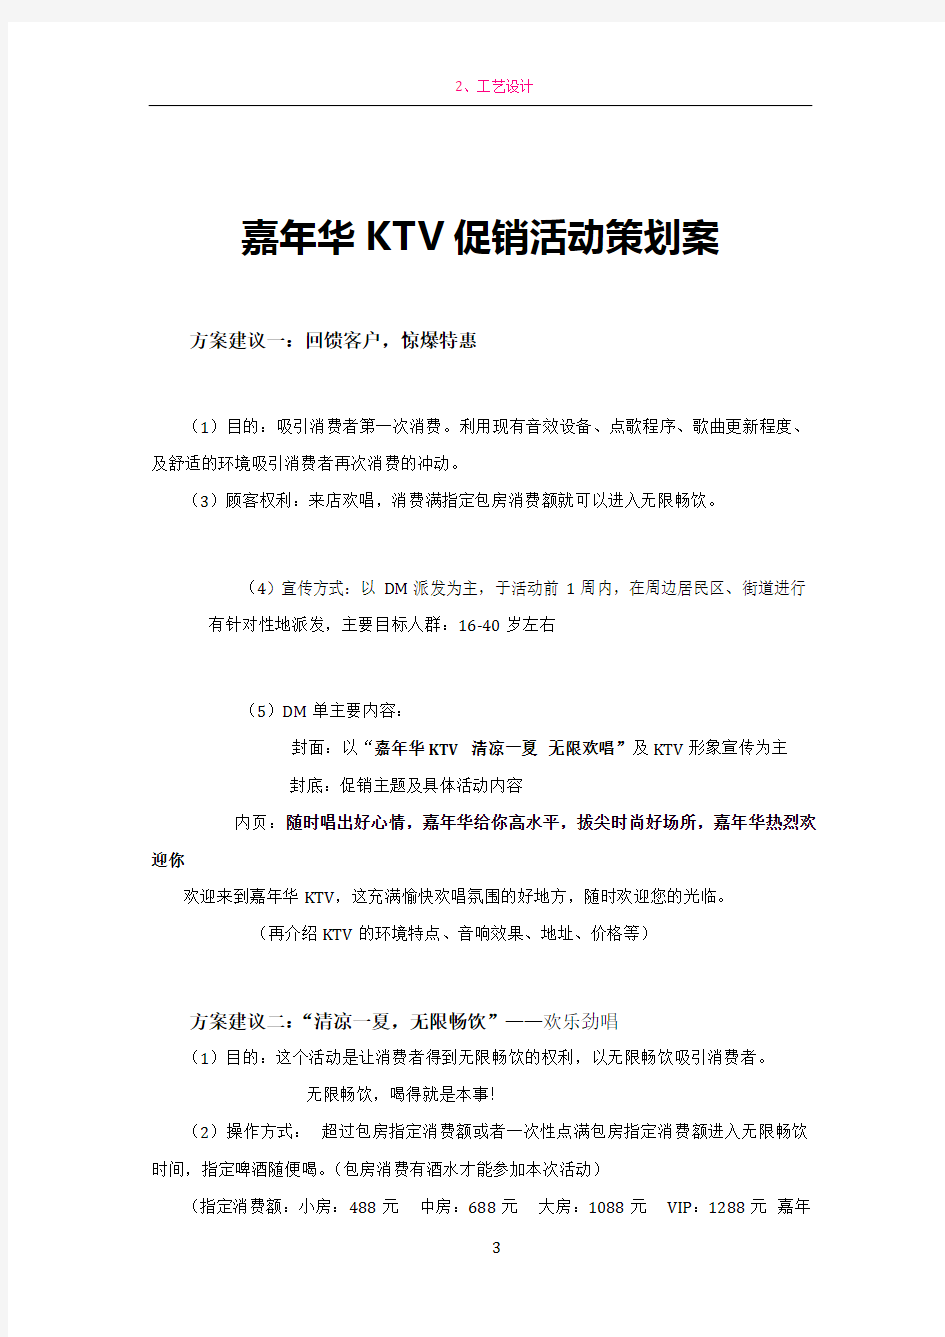 嘉年华KTV促销活动方案